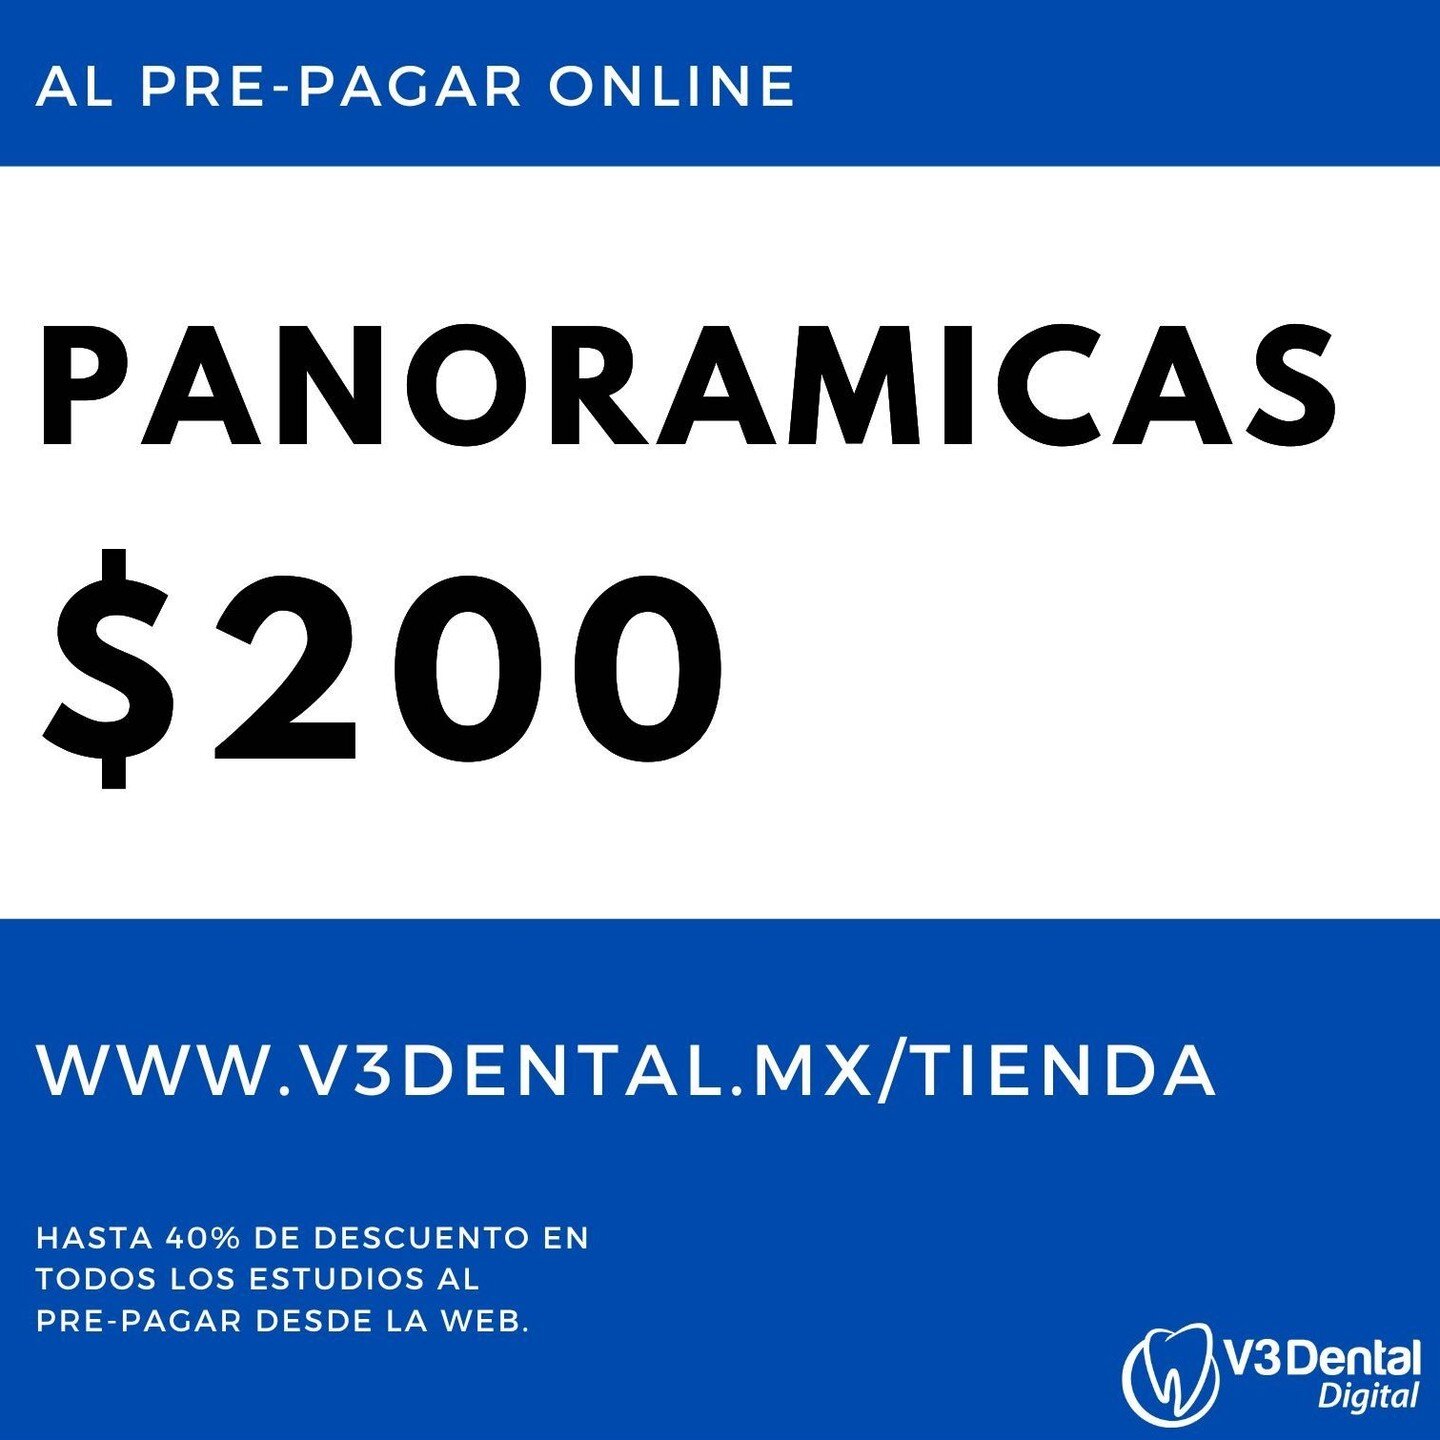 Gracias por formar parte de la comunidad de expertos #dentales mas grande en #Azcapotzalco .

En agradecimiento a tu apoyo, te obsequiamos un 10% de descuento al pre-pagar tu #radiografia #dental desde la pagina web www.v3dental.mx/tienda usando el c